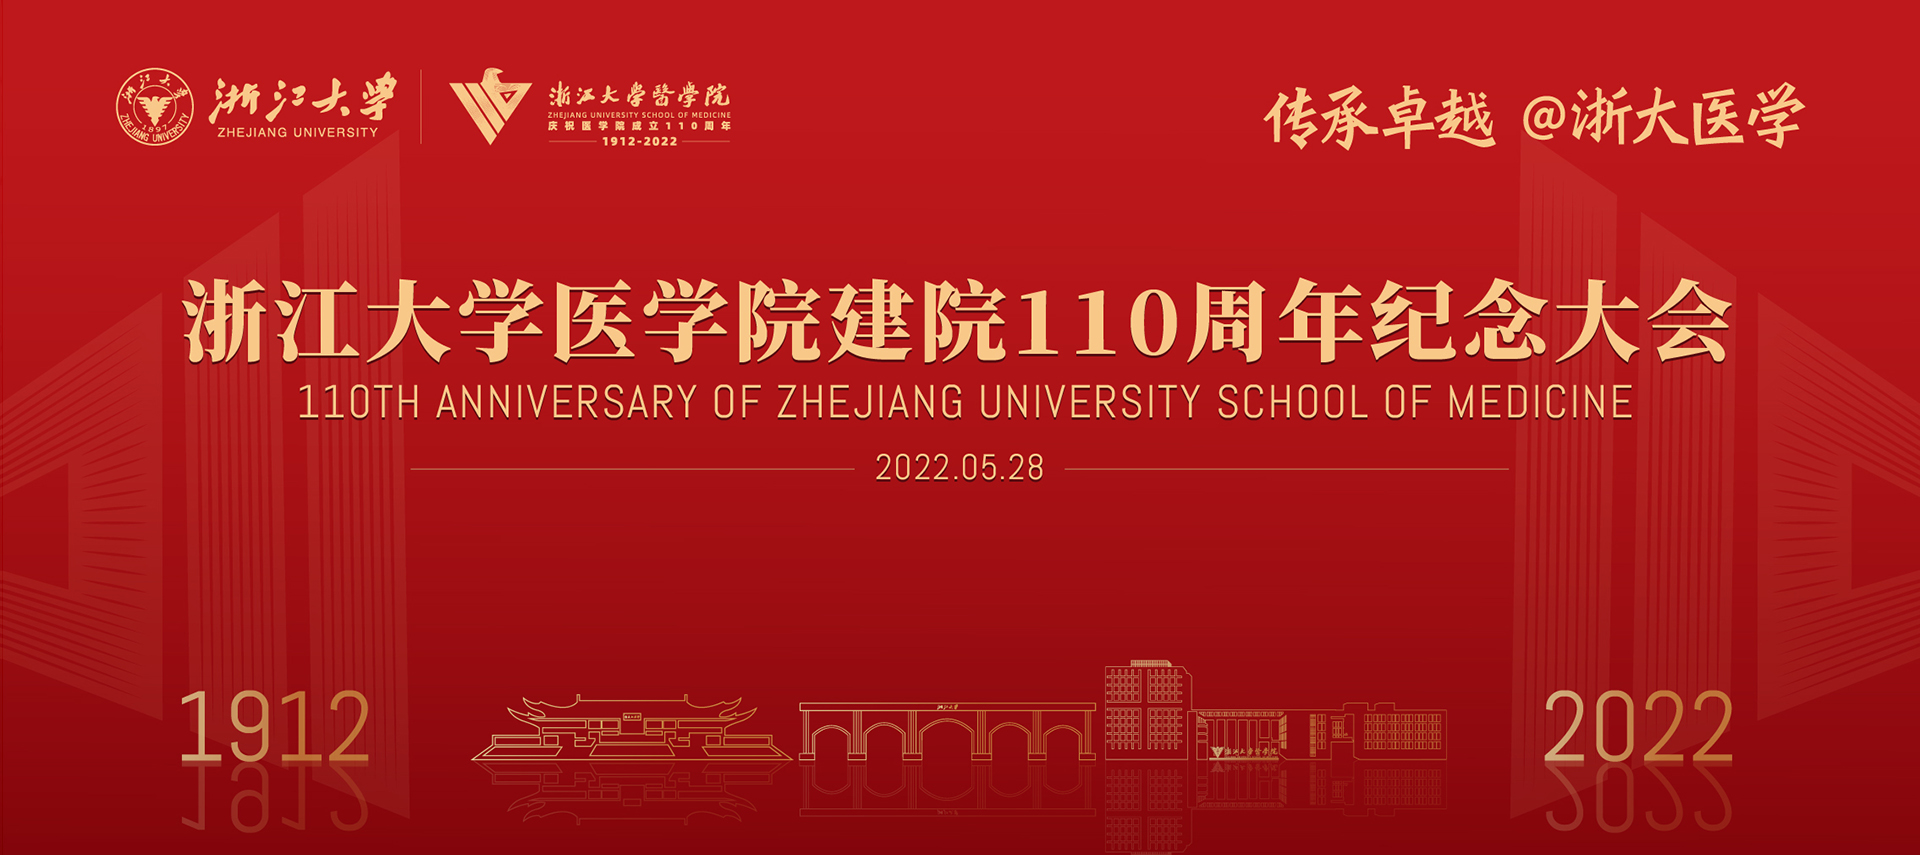 浙江大学医学院建院110周年纪念大会